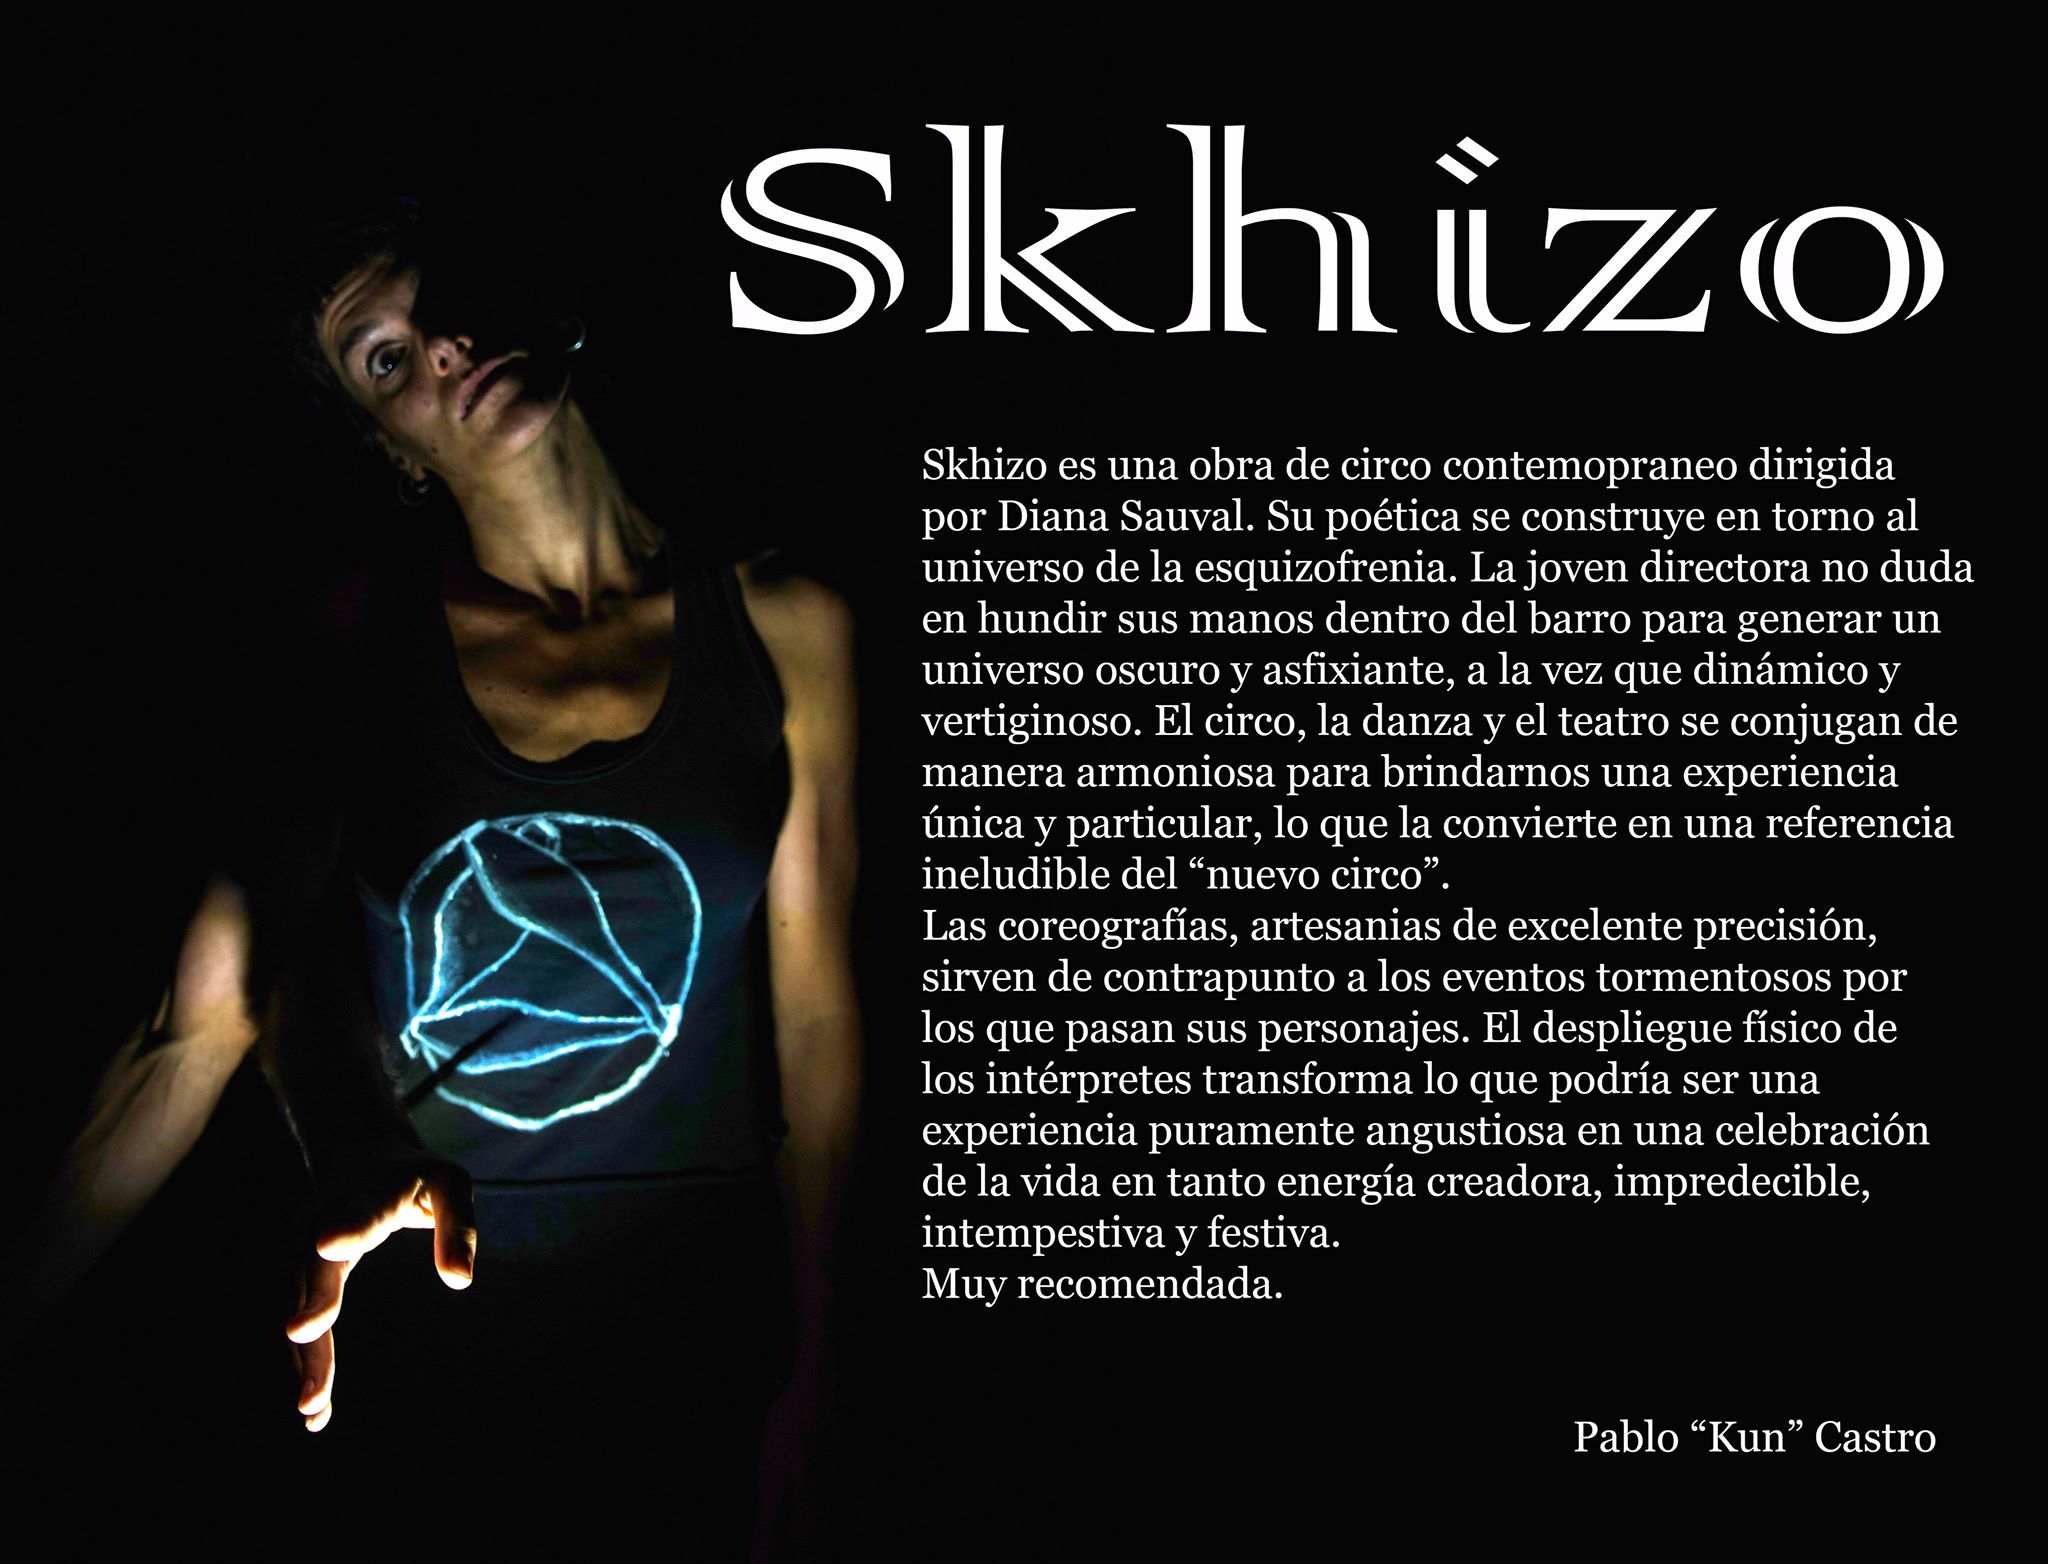 Skhizo 2019 - Circo, Danza contemporánea, Teatro - Diana Sauval